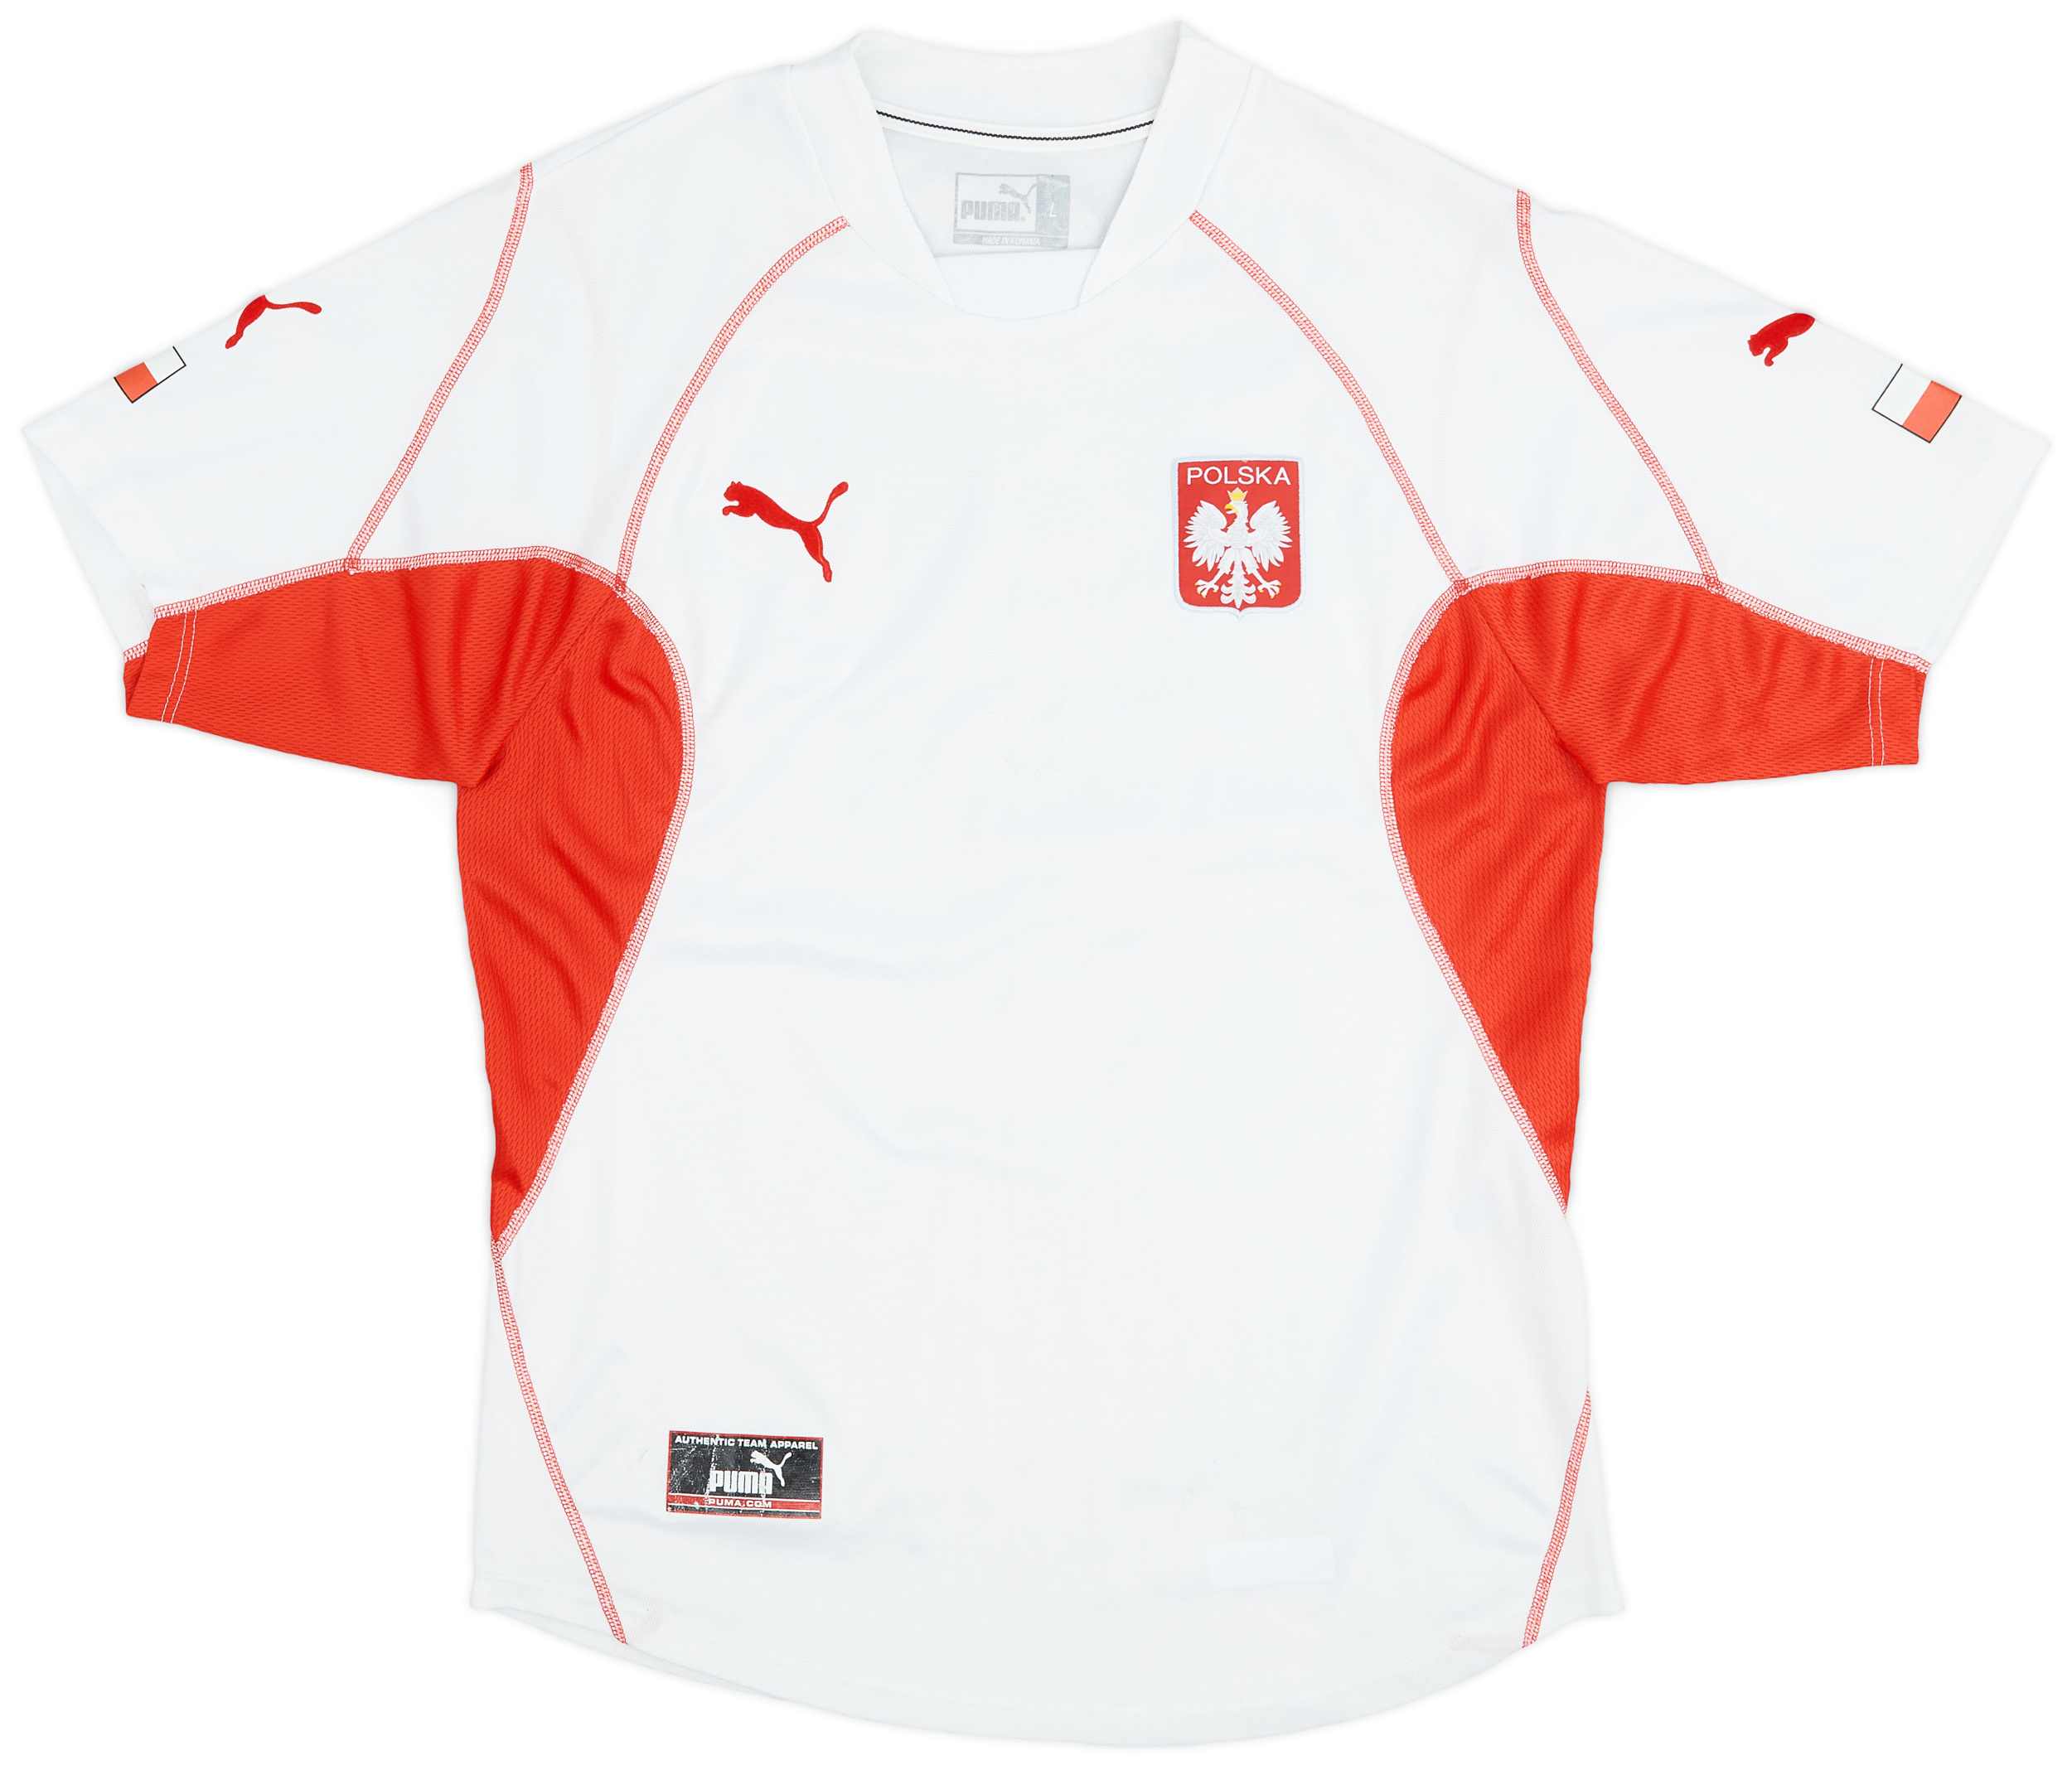 2004-06 Poland Home Shirt - 8/10 - ()